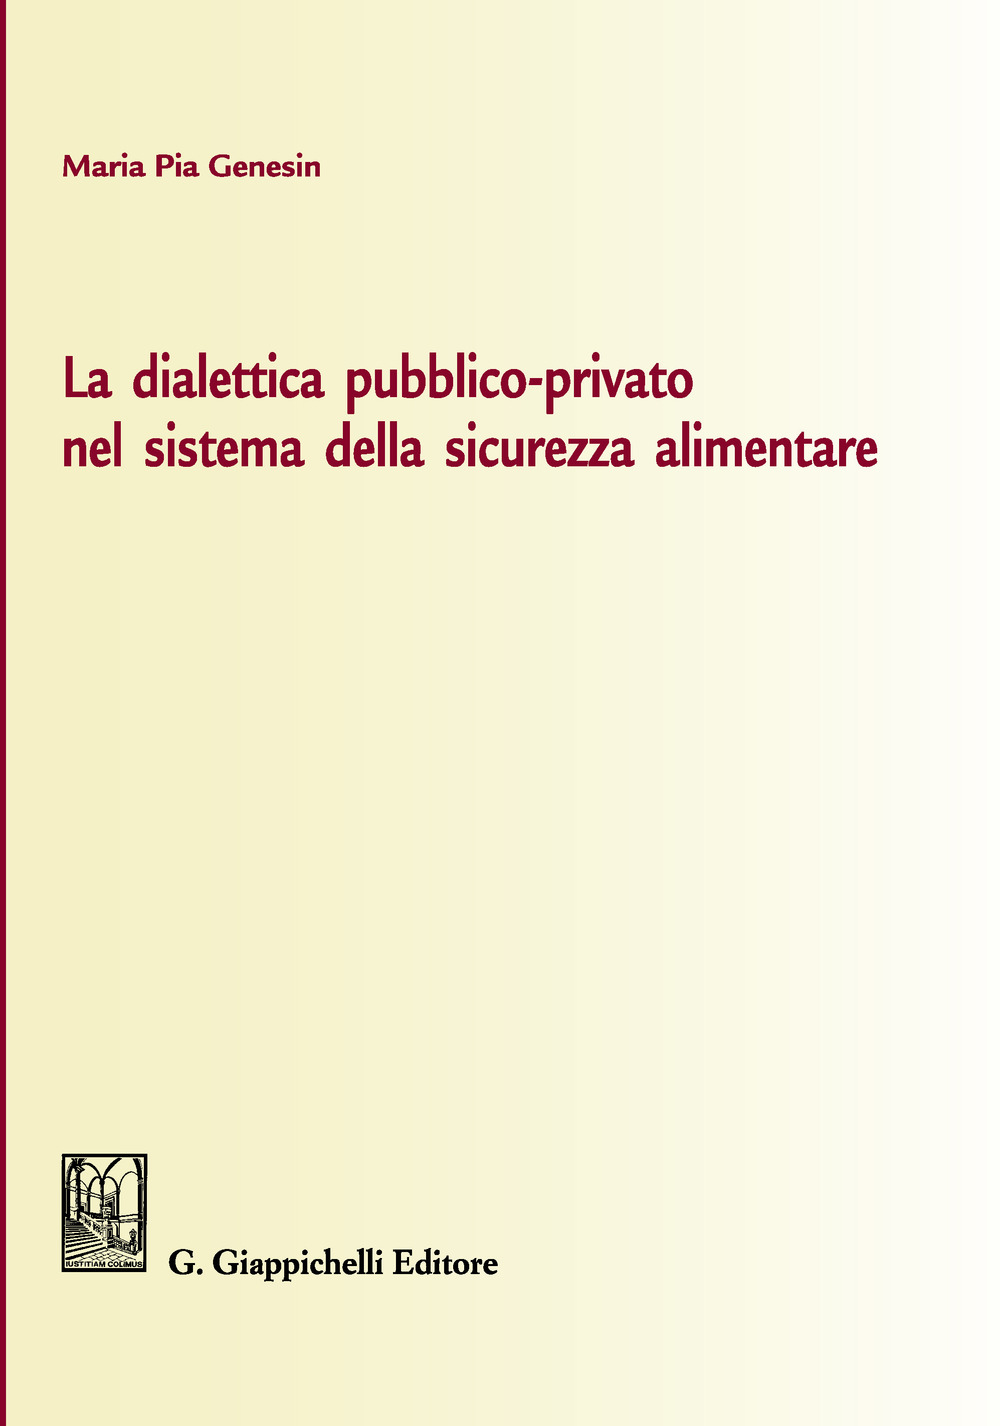 La dialettica pubblico-privato nel sistema della sicurezza alimentare